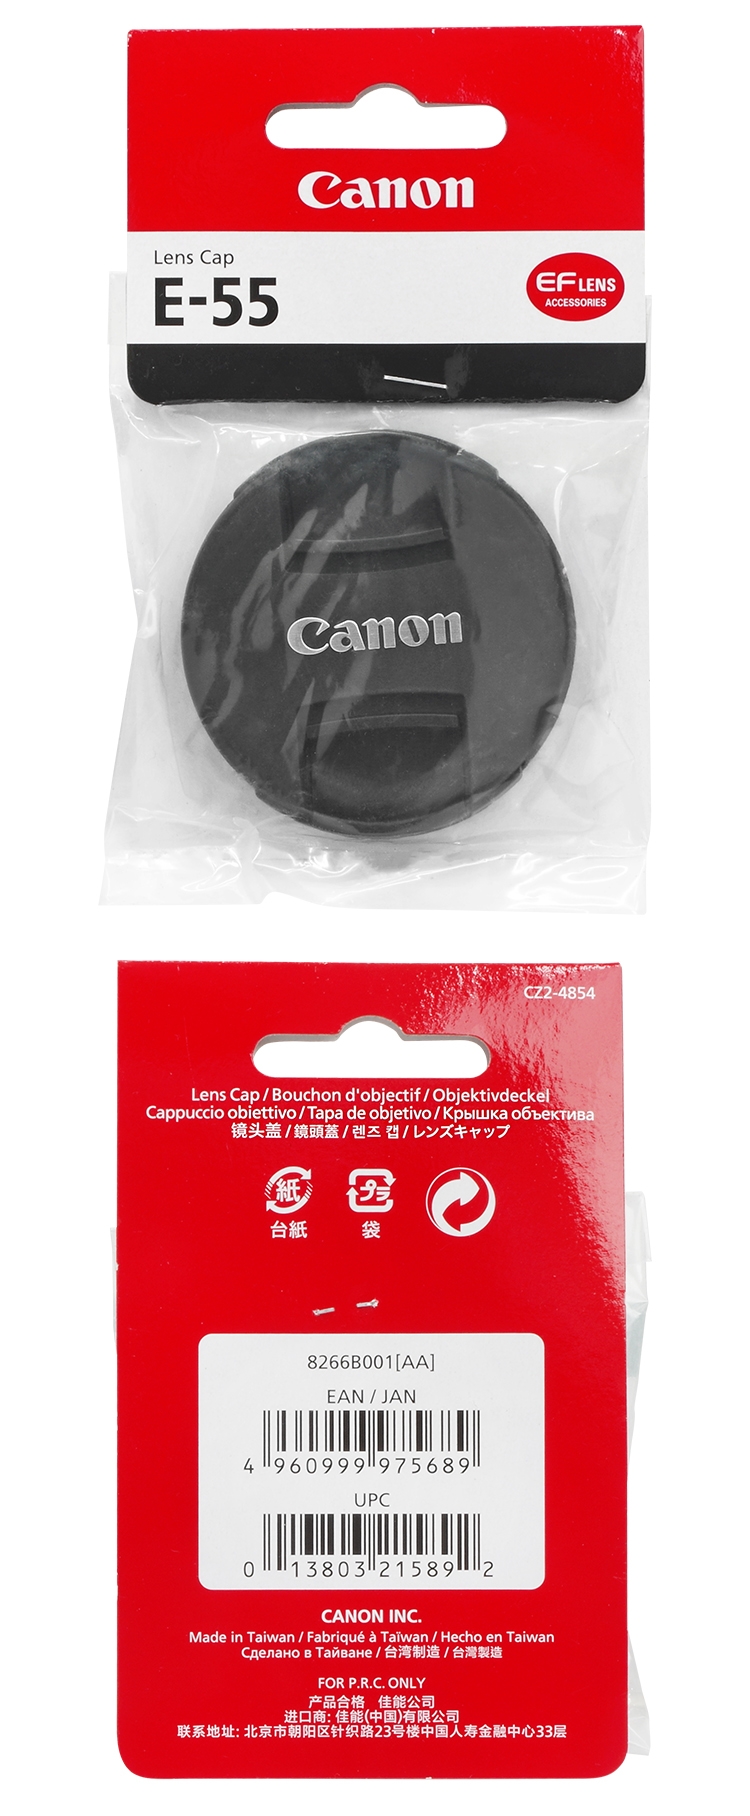 Canon レンズキャップ LCAPE582 - カメラ・ビデオカメラ・光学機器用